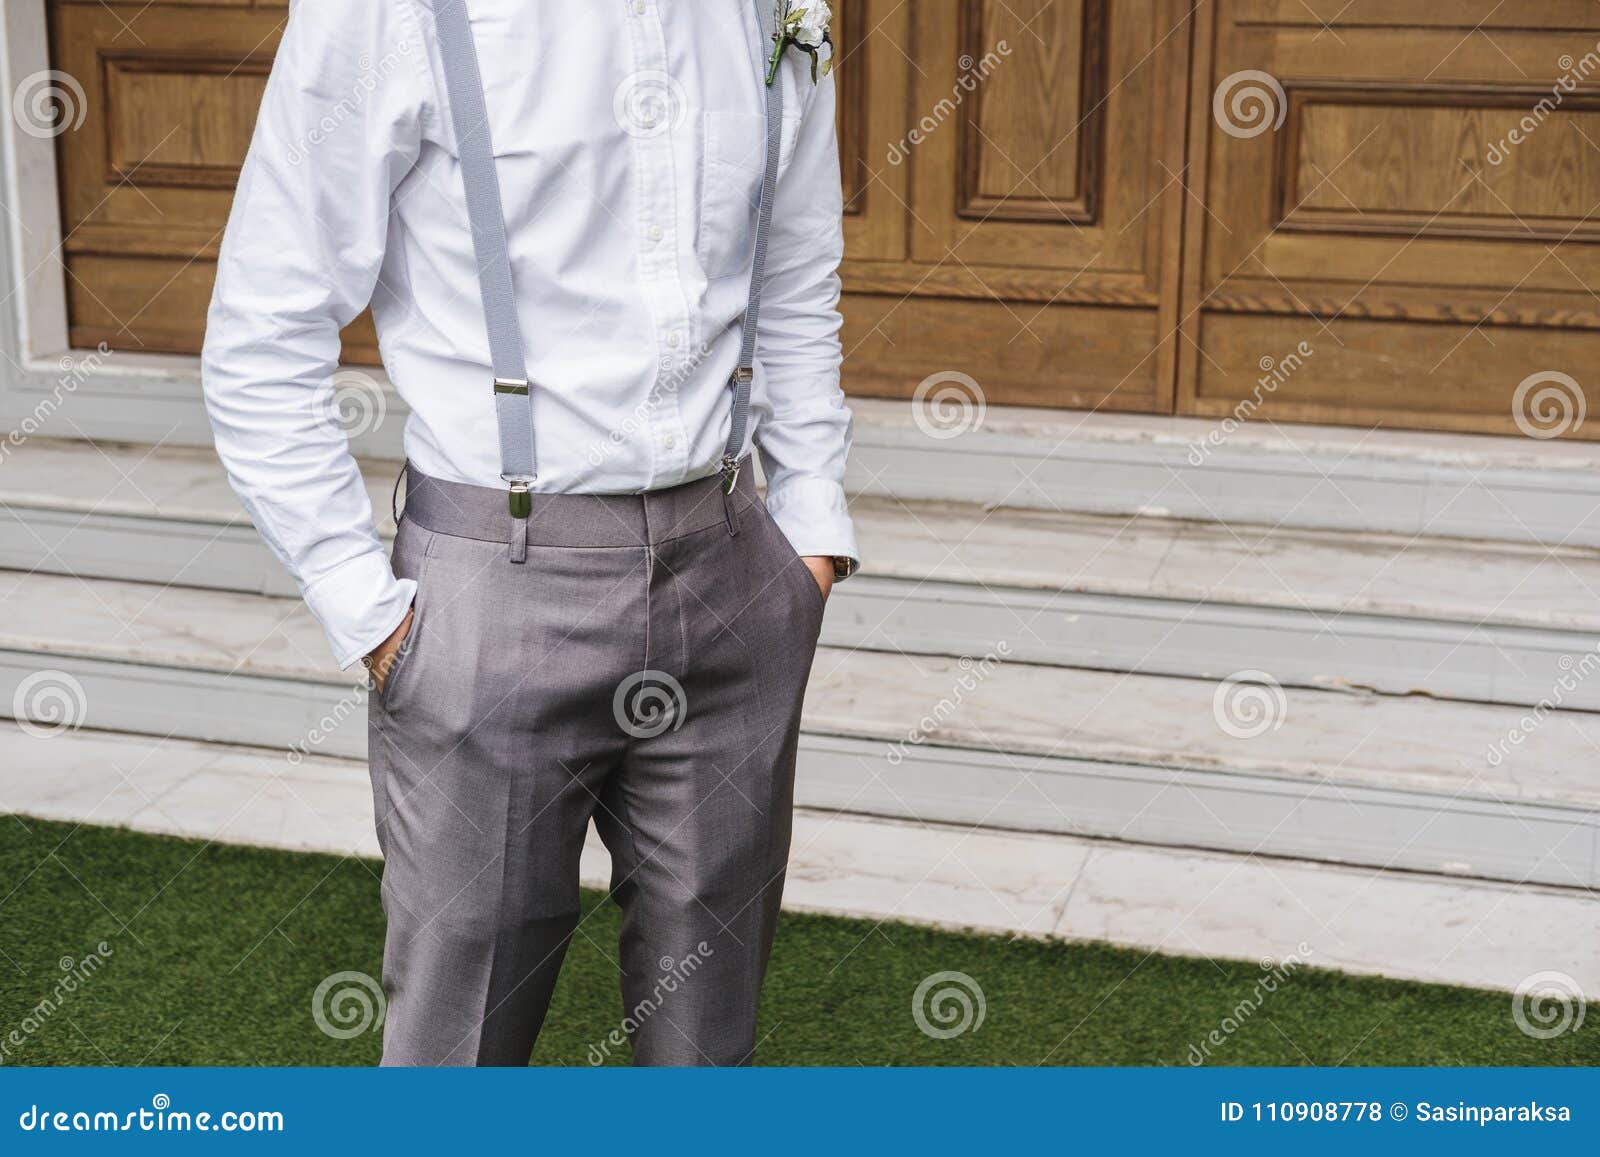 Hombre Joven Del Primer En La Camisa Blanca Y El Pantalón Gris De La Escoria, Con La Mano En El Bolsillo Foto de archivo - Imagen de gris, 110908778